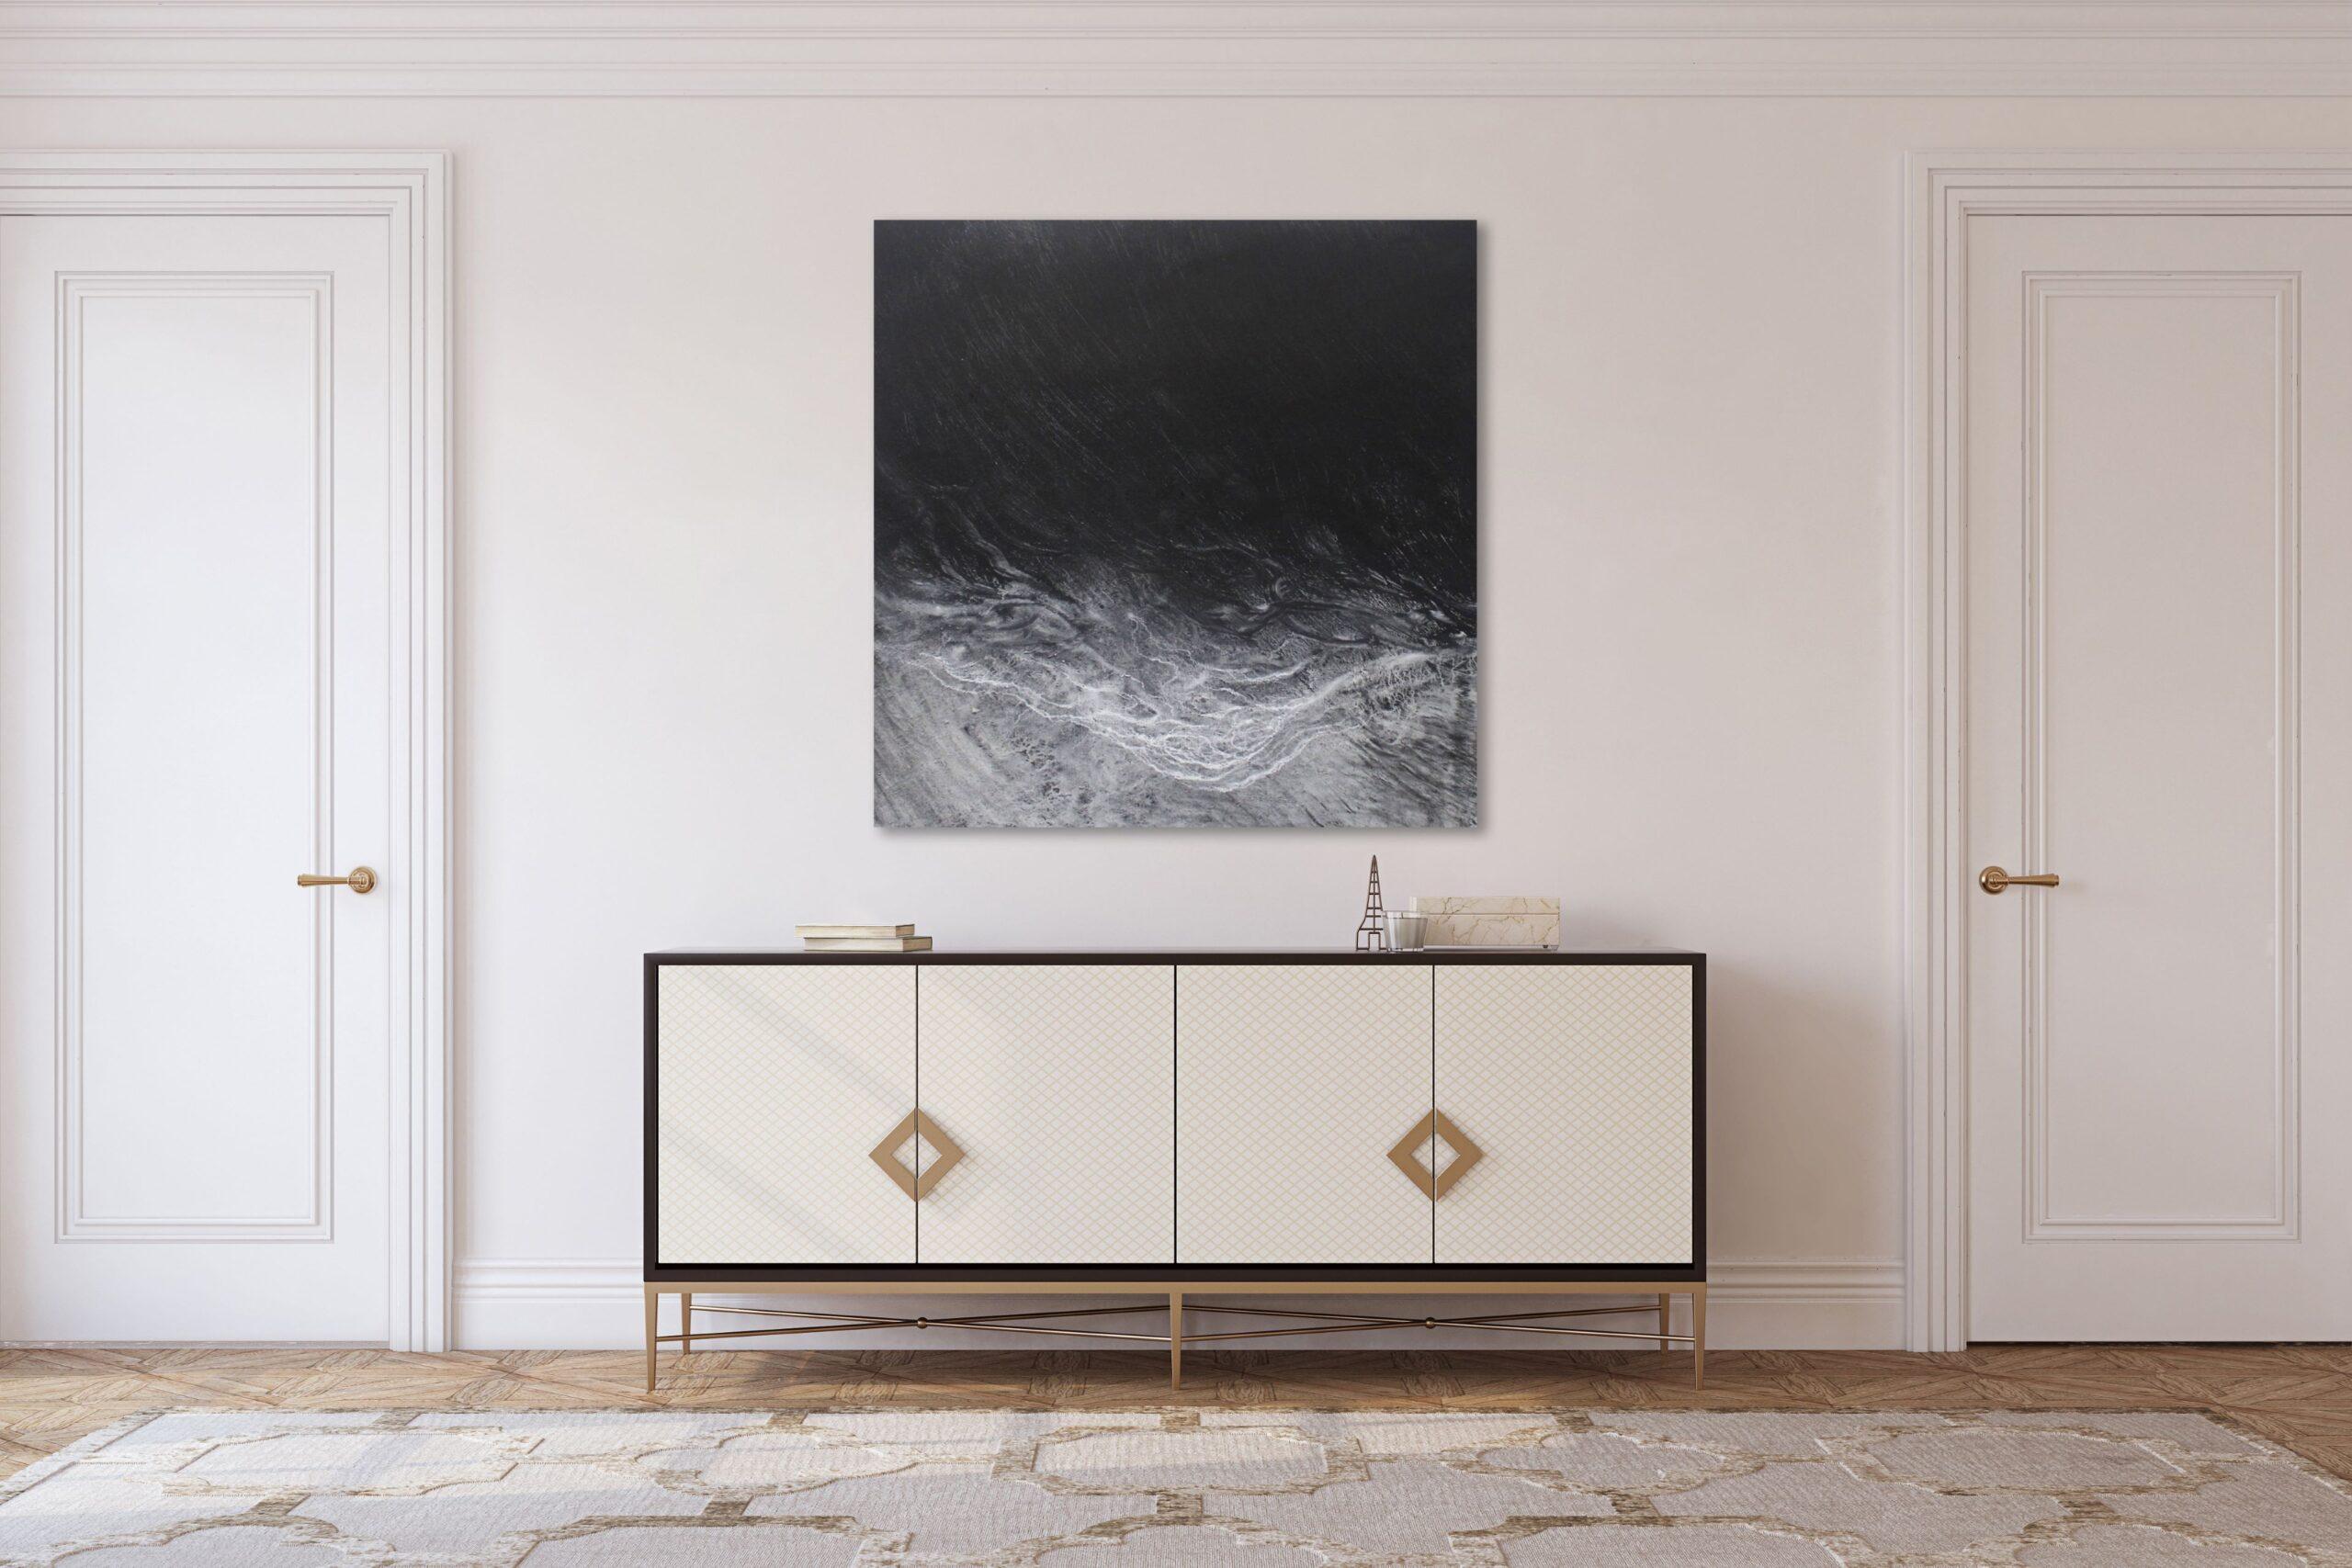 The void by Franco Salas Borquez - Black & white painting, ocean waves, seascape 1